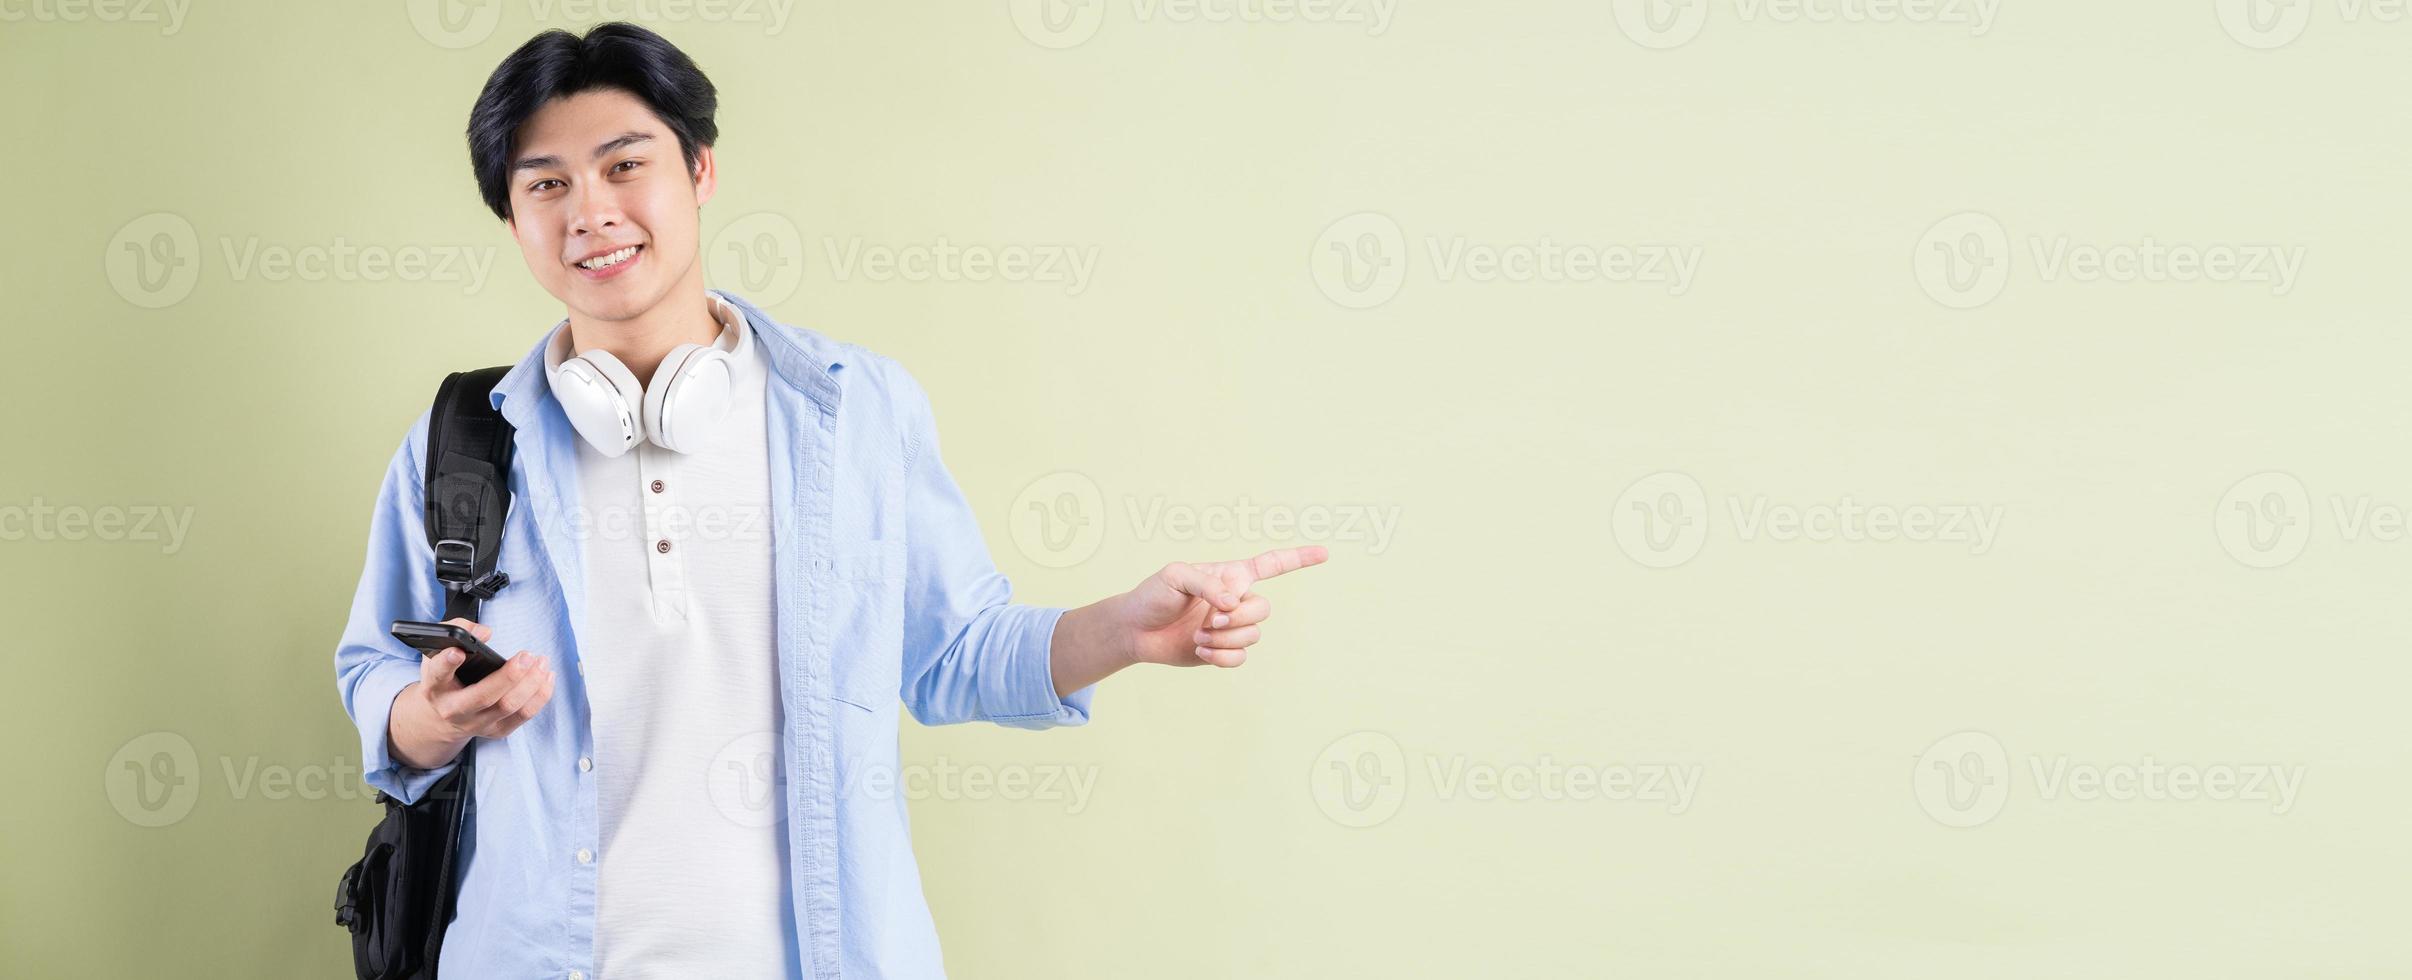 mannelijke Aziatische student lacht en wijst met zijn vinger naar de linkerkant foto